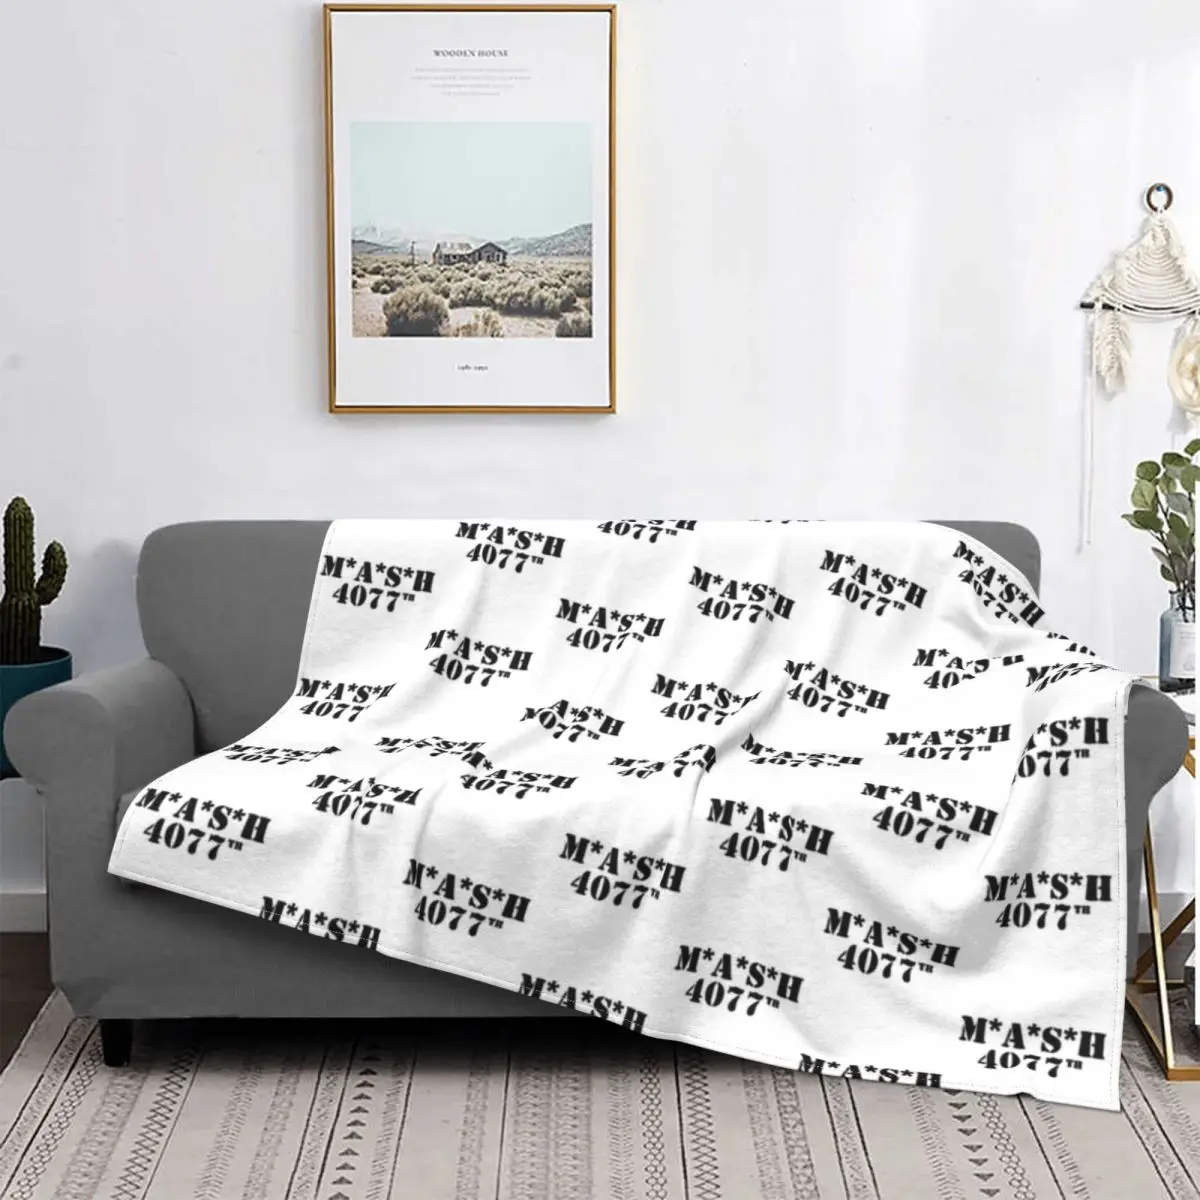 

Mash 4077 одеяла бархатные зимние телешоу многофункциональные мягкие пледы одеяла для кровати спальни ковер